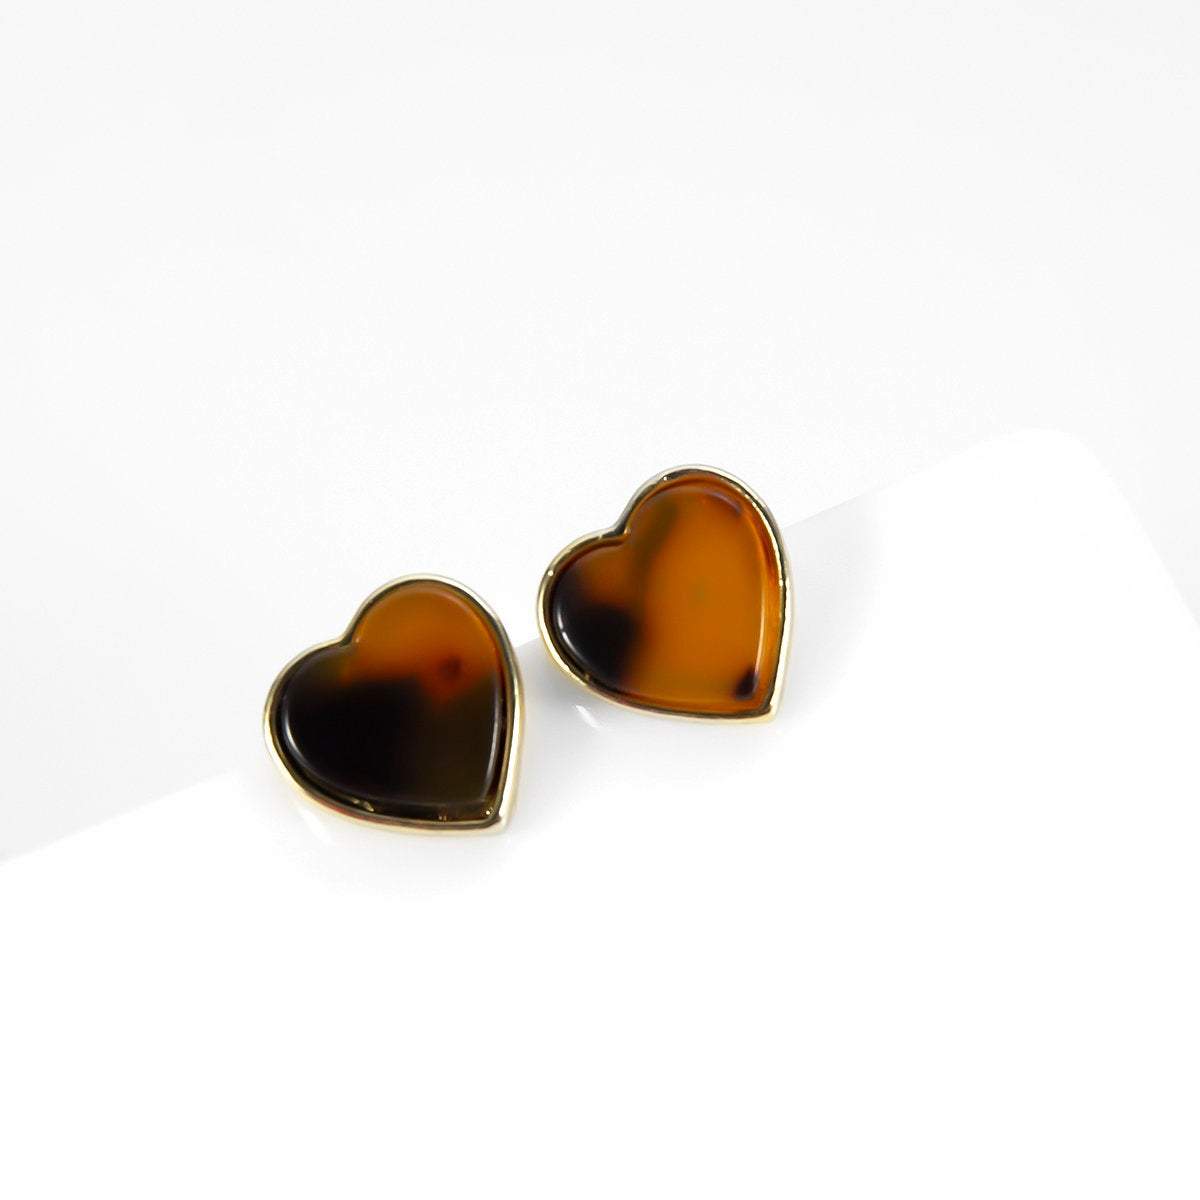 Geometric Acrylic Marble Leopard Heart Shape Earrings -  Tortoise Shell Jewelry - Statement Jewelry - ArtGalleryZen